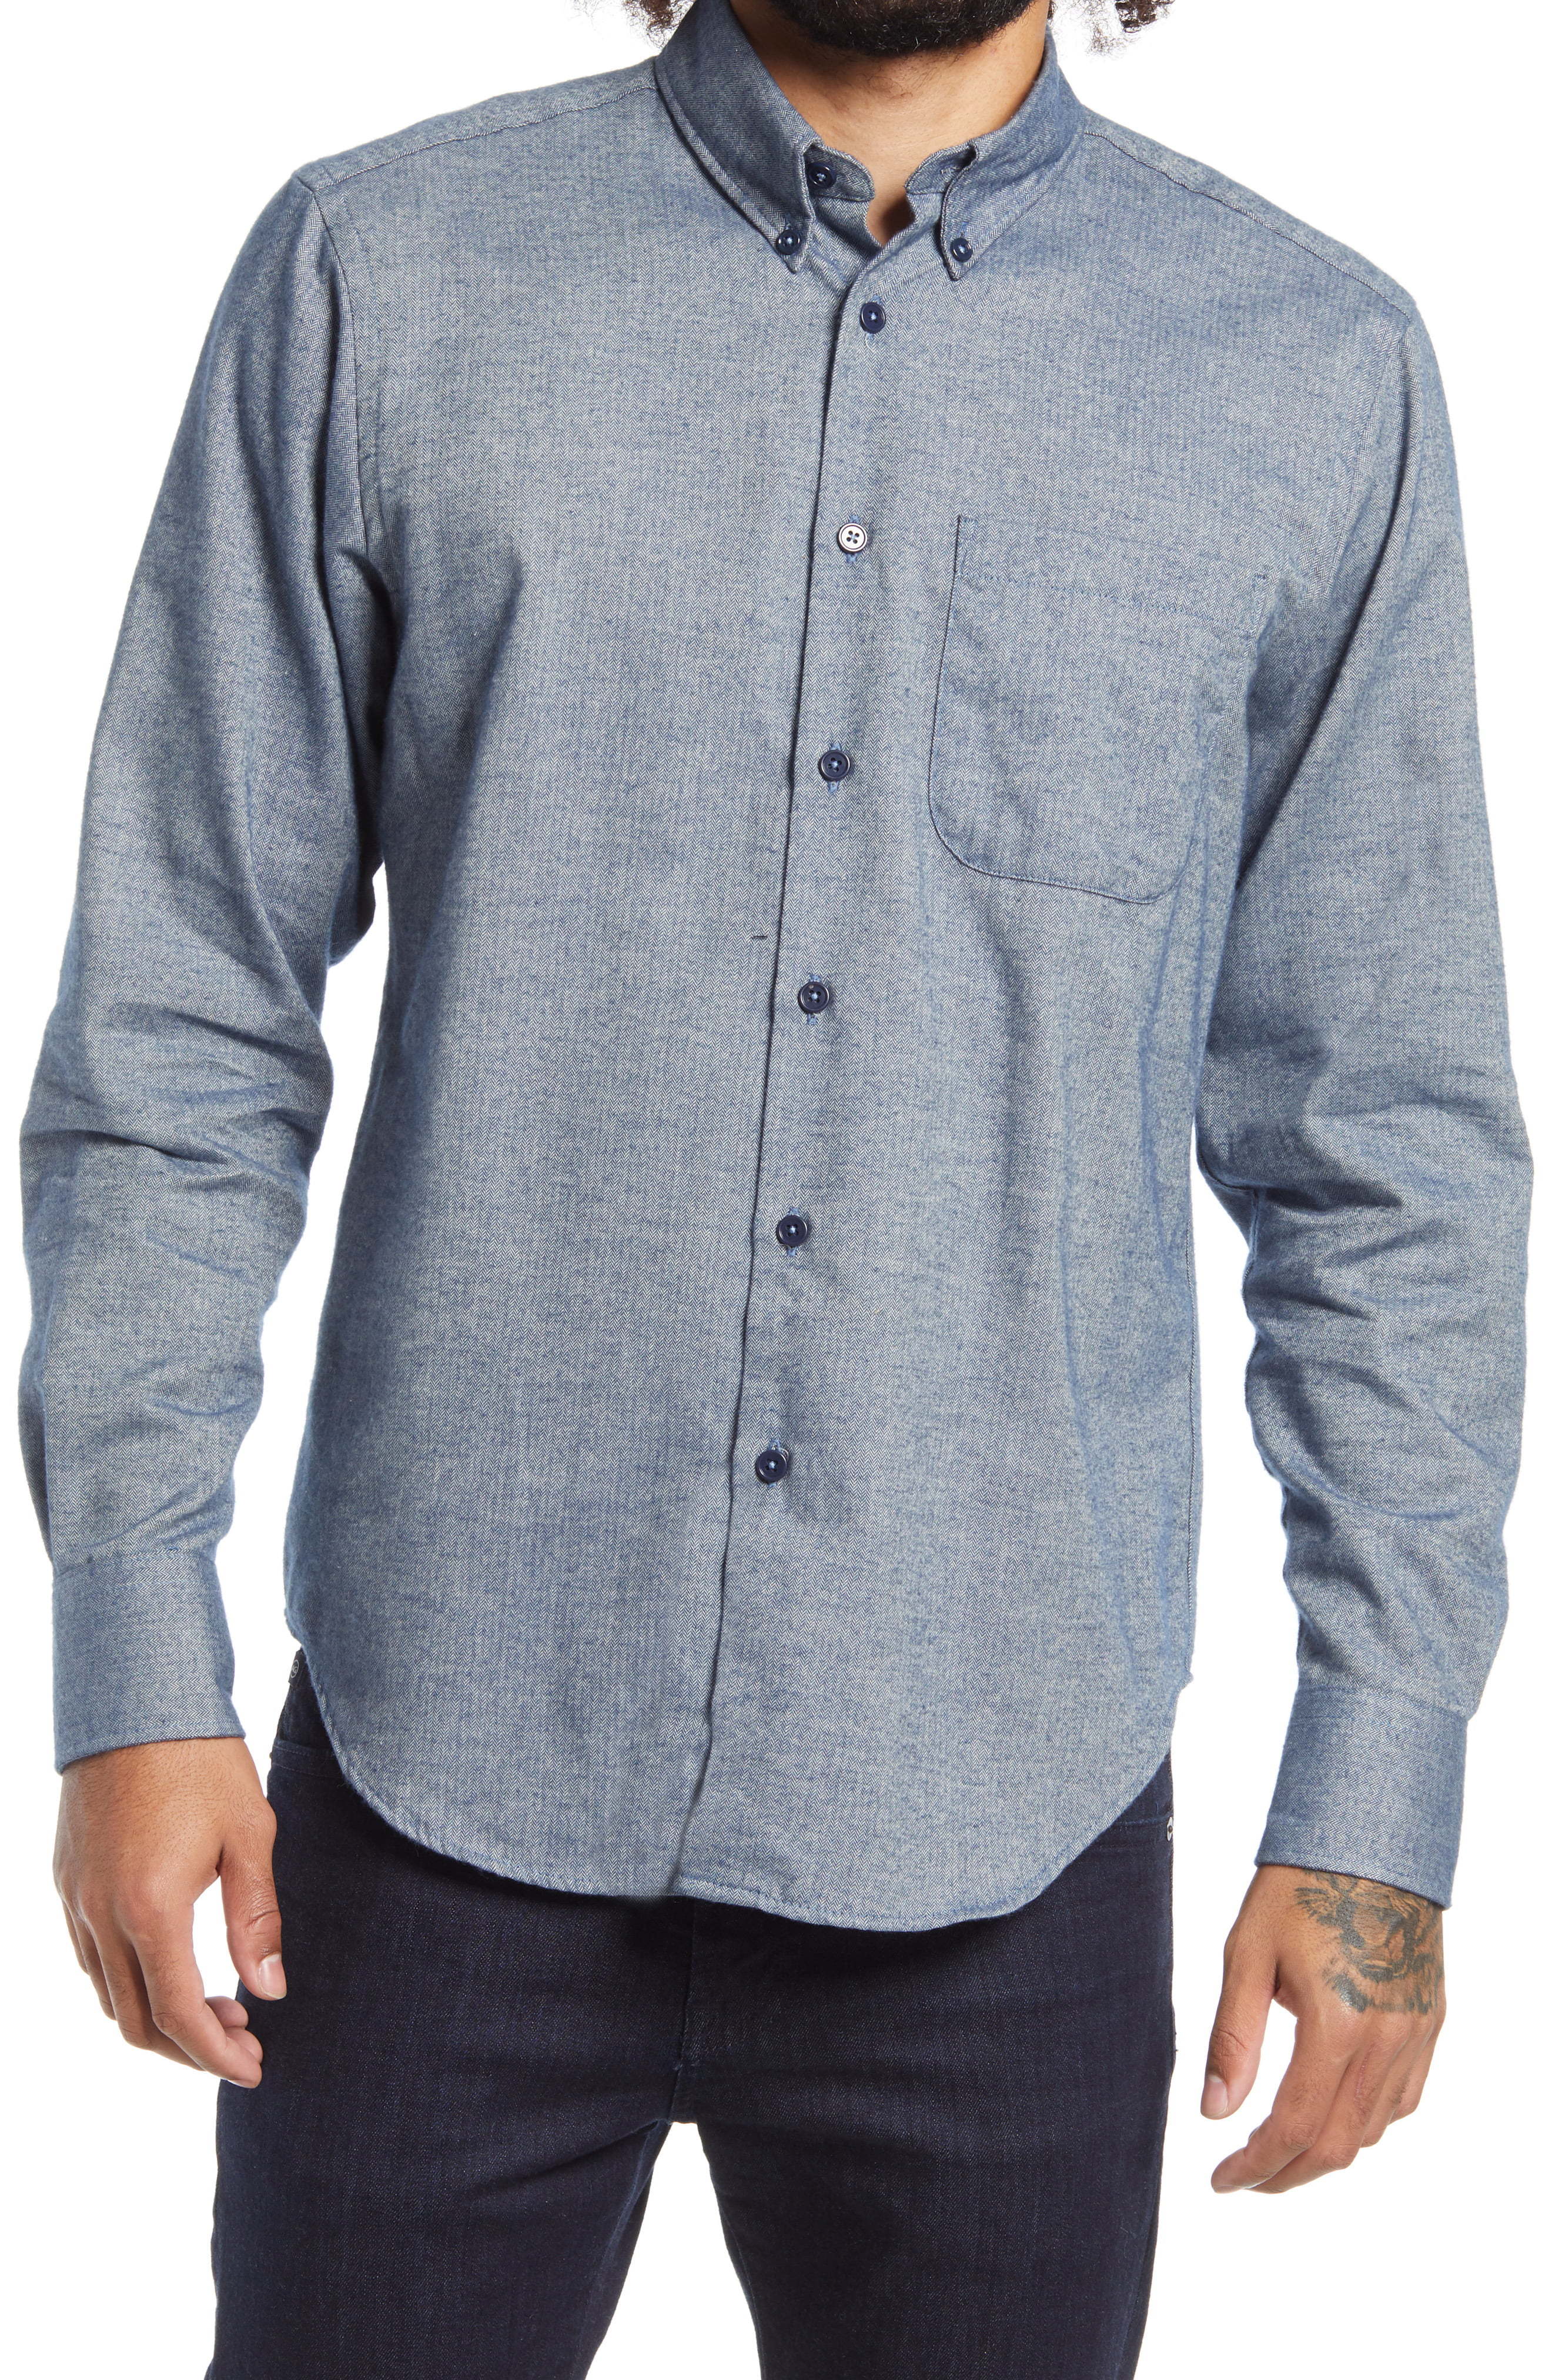 Naked & Famous Denim Herringbone Flannel Shirt, $169 | Nordstrom ...